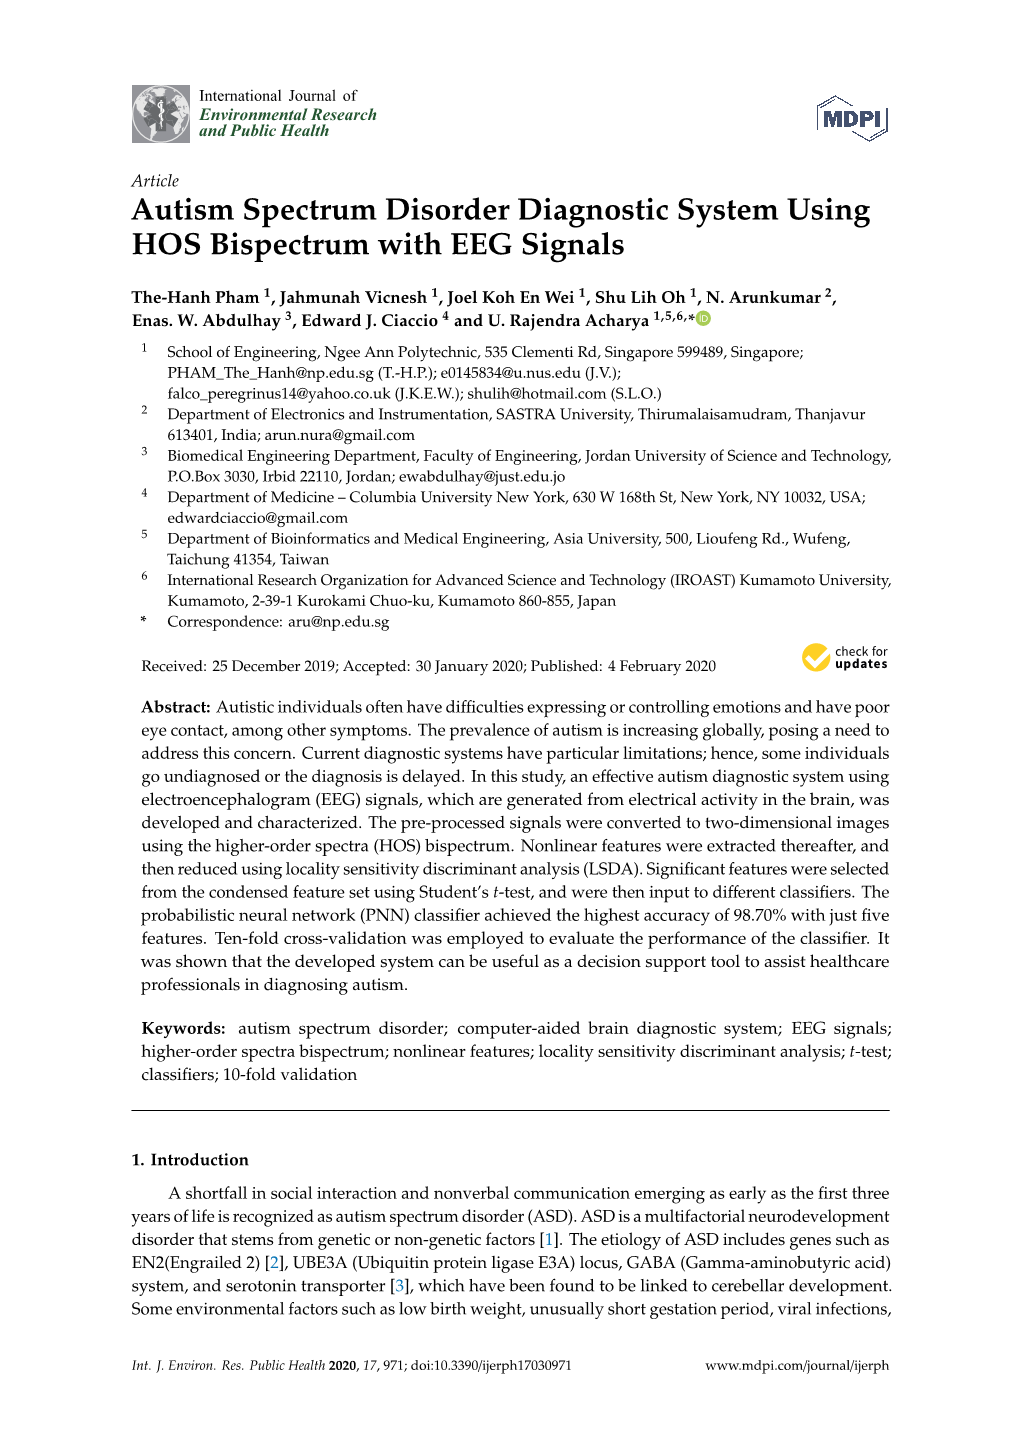 Autism Spectrum Disorder Diagnostic System Using HOS Bispectrum with EEG Signals